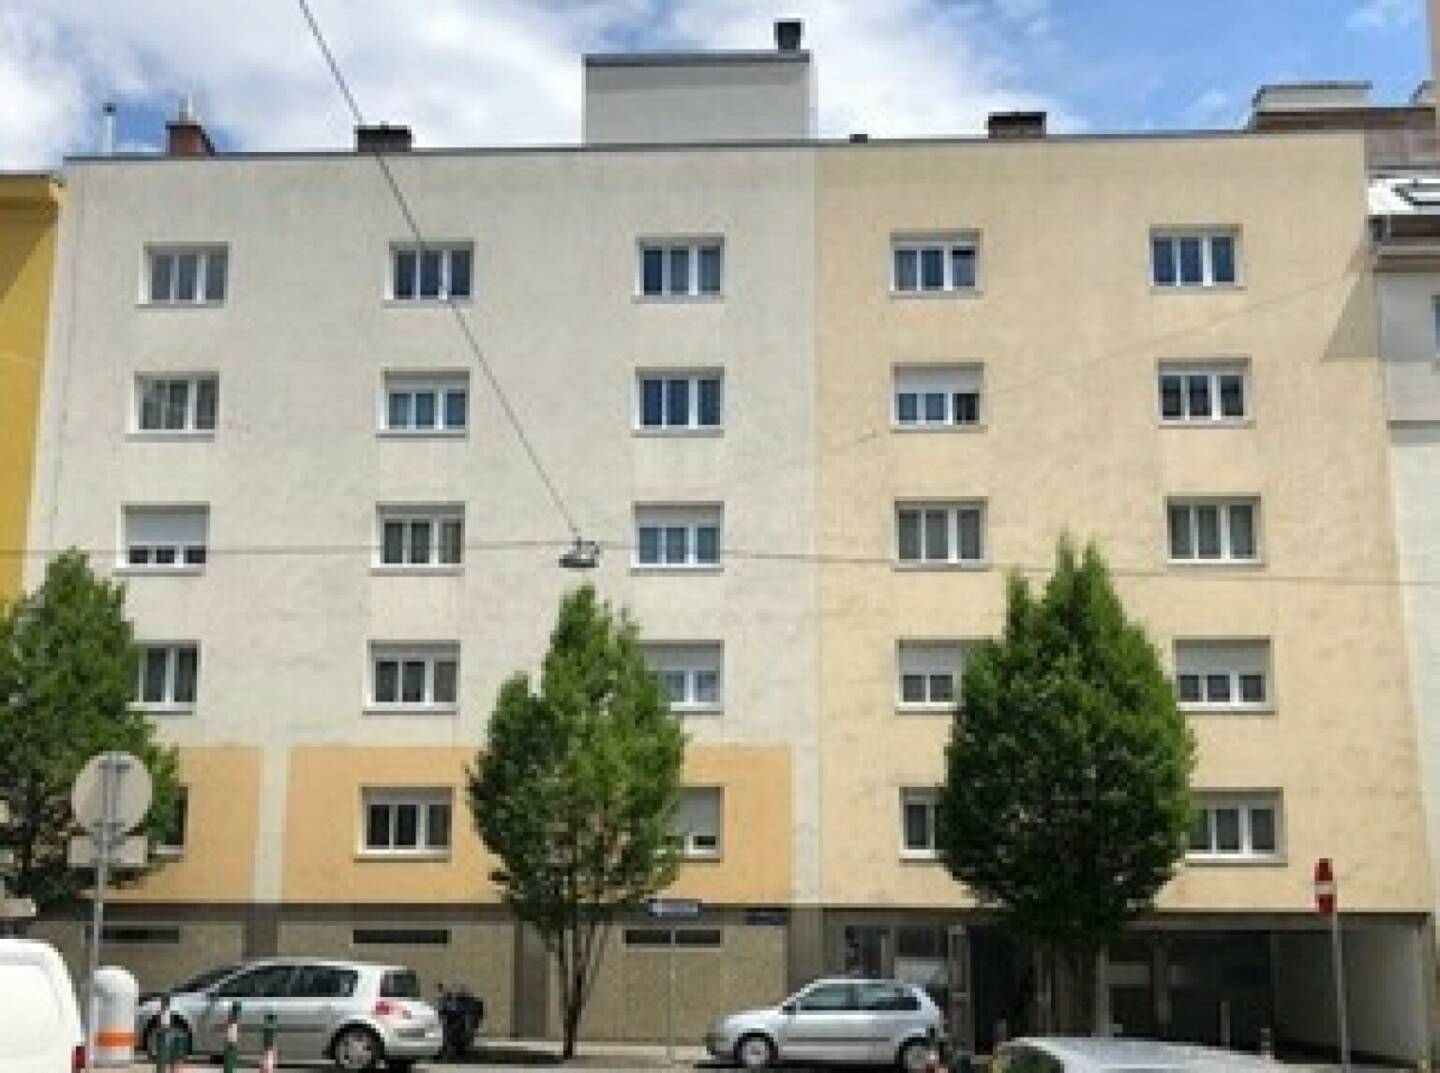 Über den Pallas Capital High Yield R.E. SICAV wurde der Velum Gruppe eine nachrangige Finanzierung für ein Immobilienprojekt in Wien zur Verfügung gestellt. Bei der Immobilie handelt es sich um eine Wohnanlage mit mehr als 100 Wohnungen und über 60 Stellplätzen. Fotocredit: VELUM Gruppe